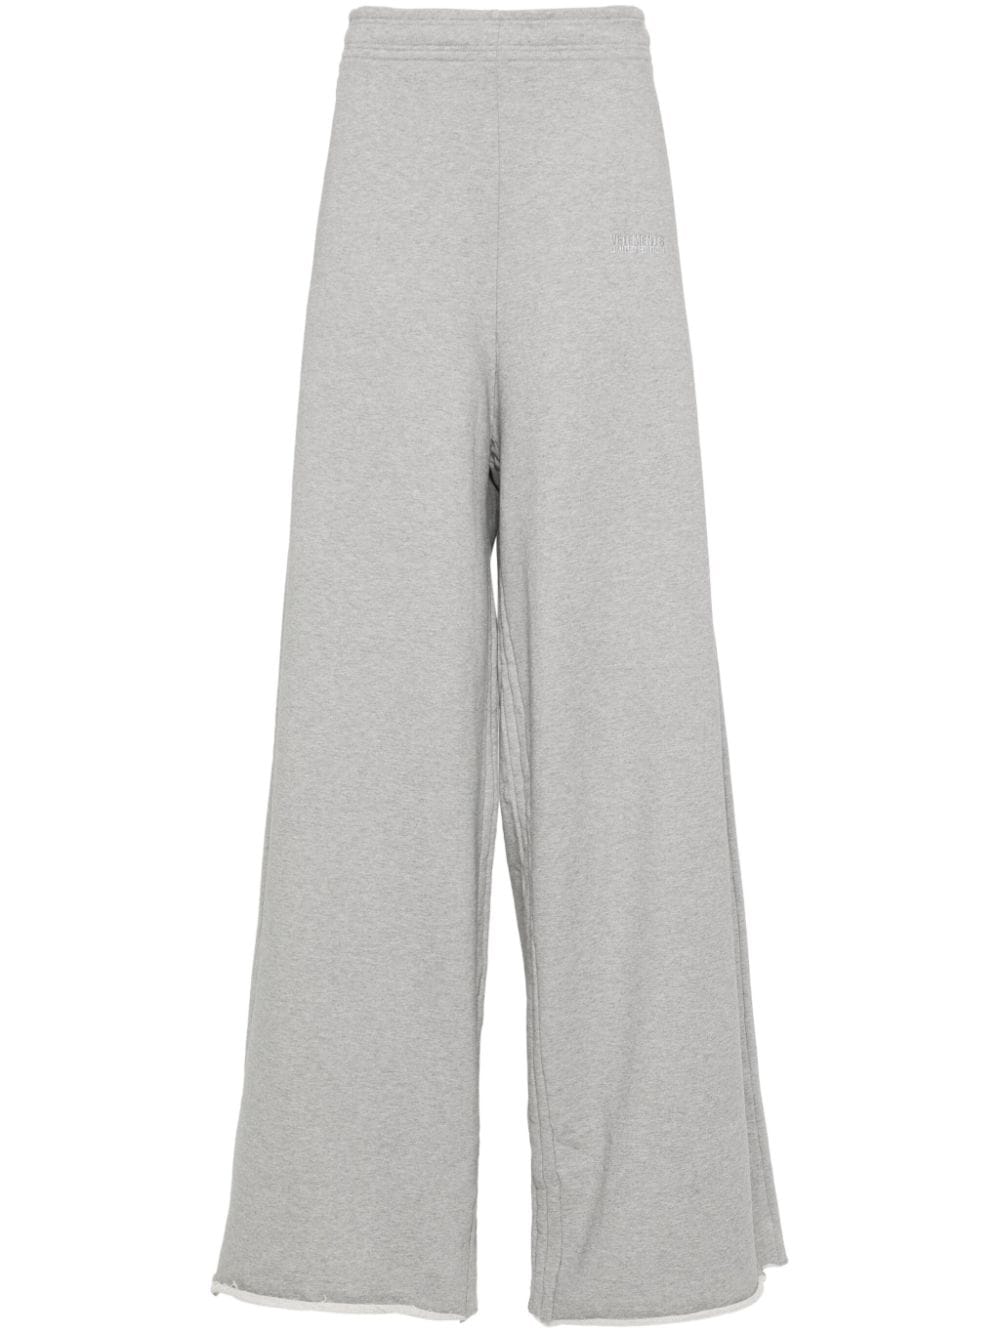 VETEMENTS Gray Cotton Blend Sweatpants for Women - SS24 Season